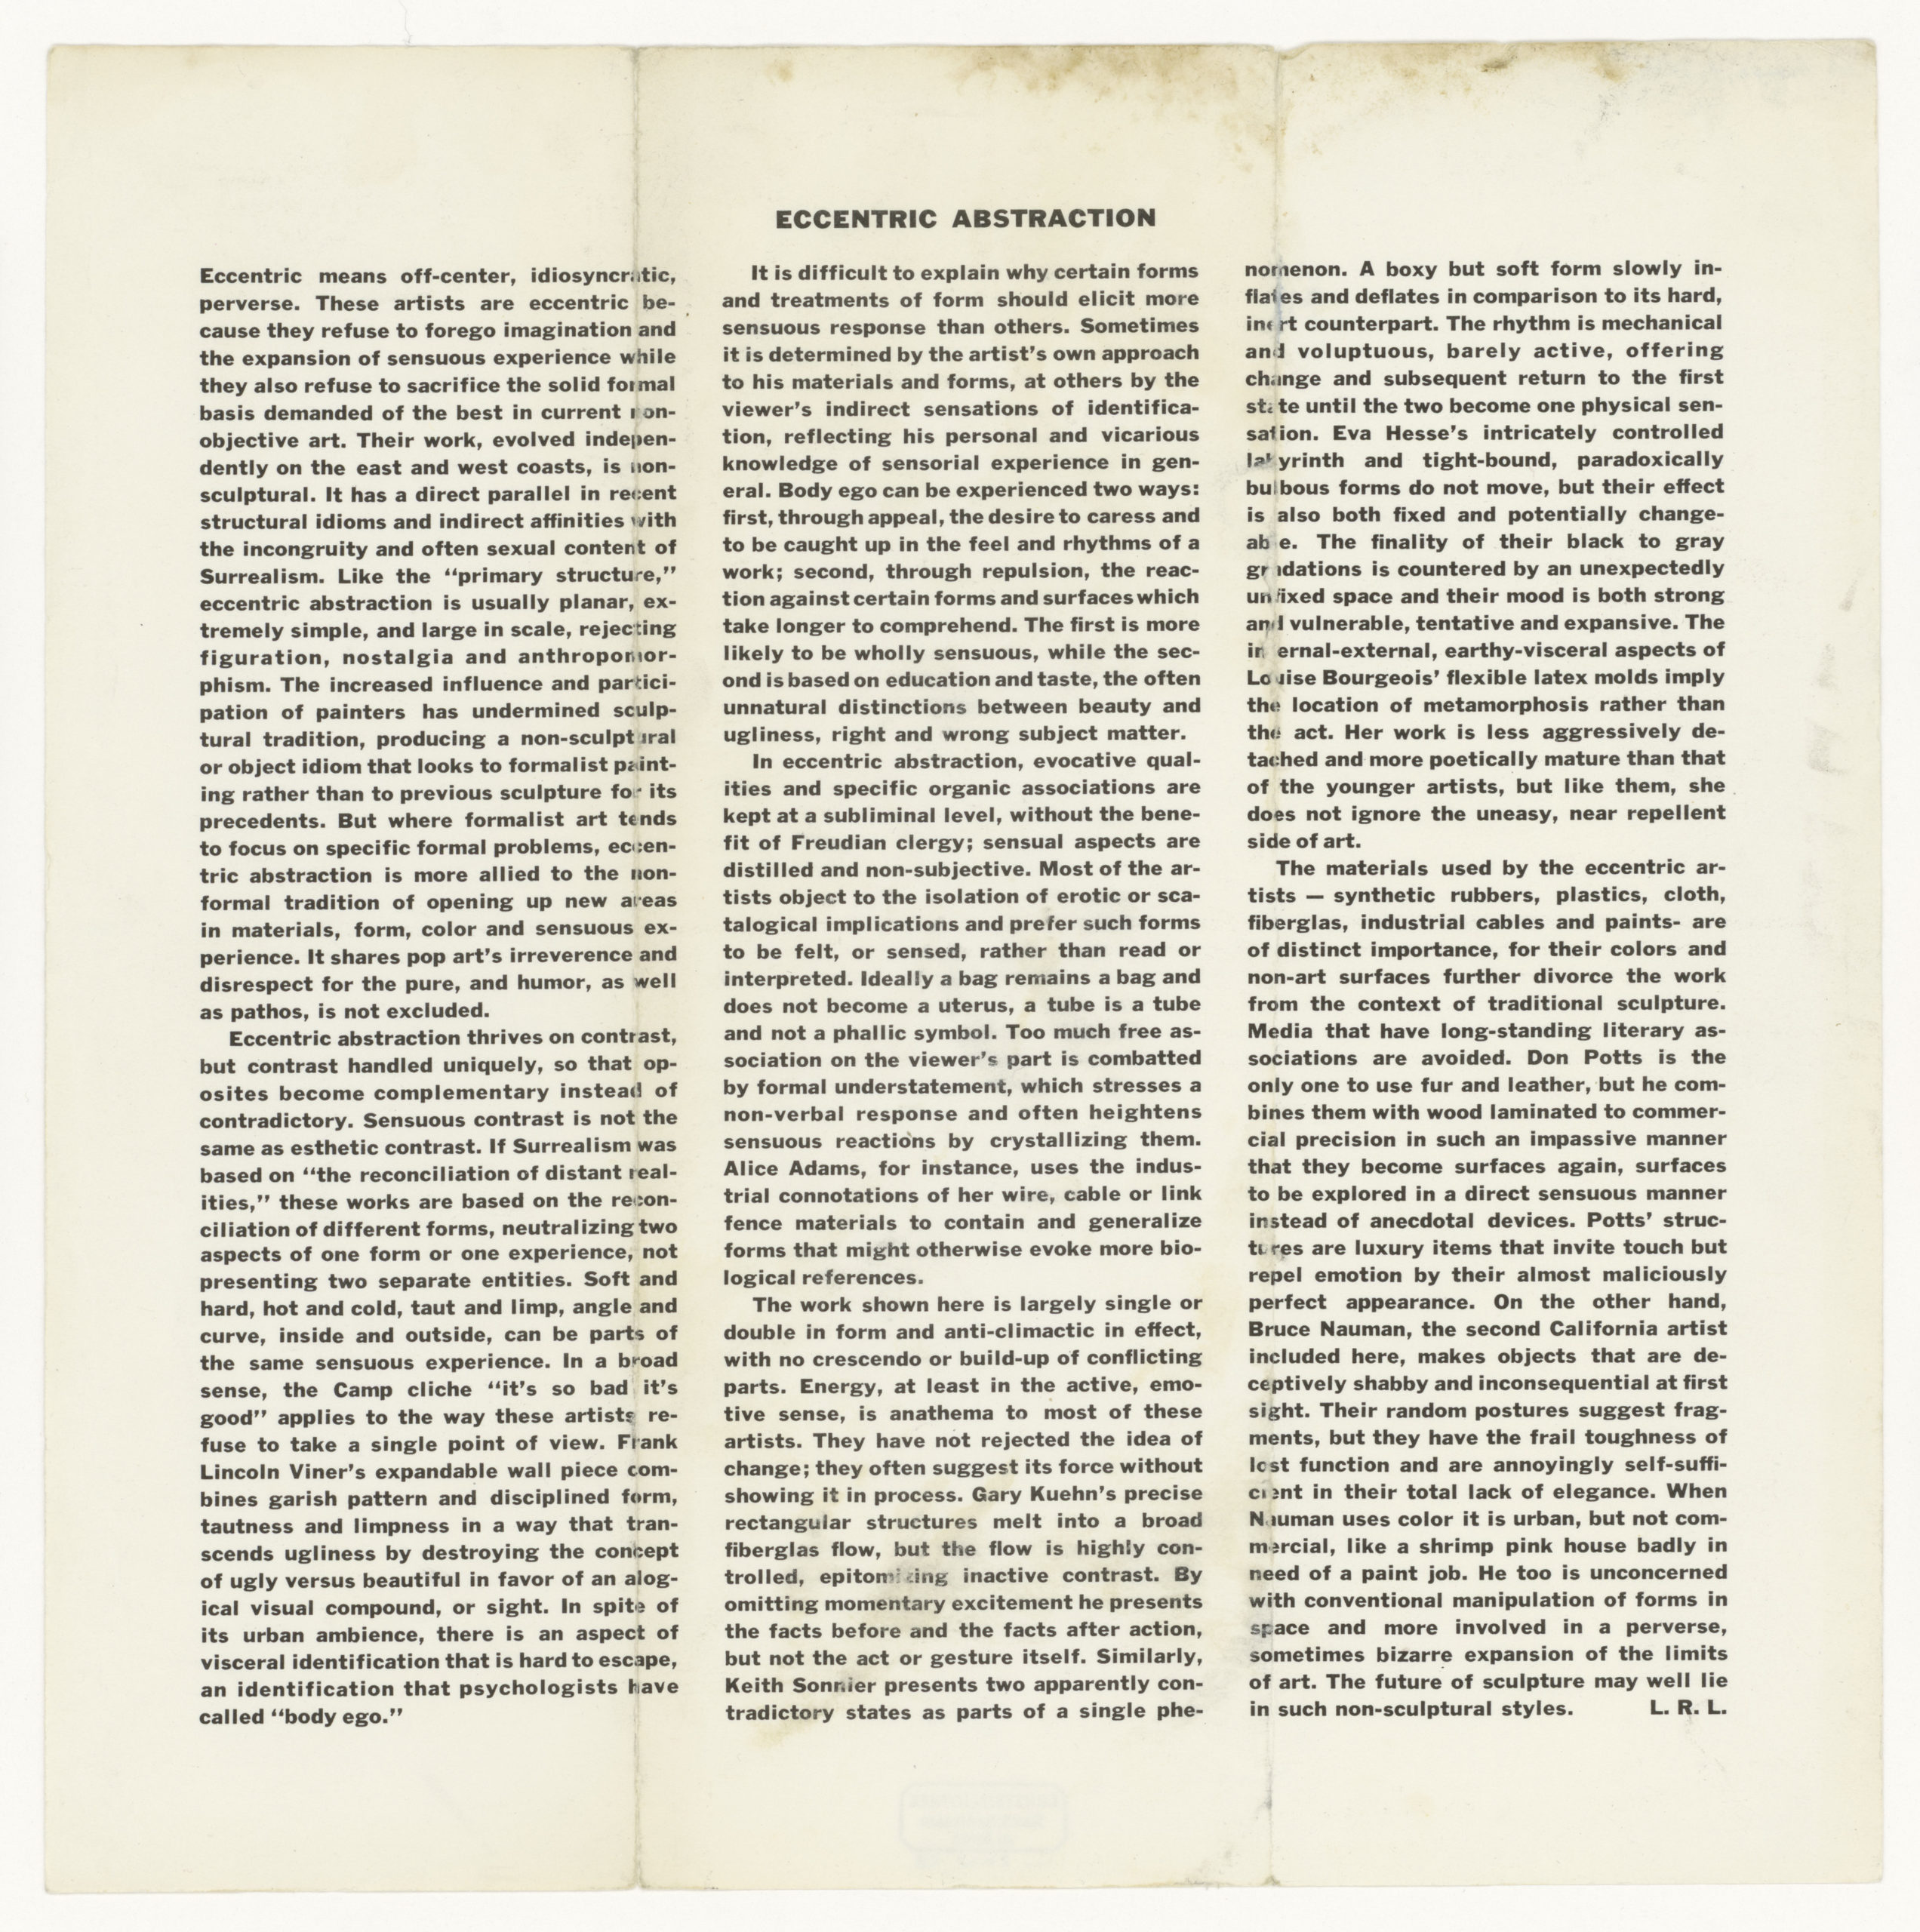 ECCENTRIC ABSTRACTION, Fischbach Gallery, New York 1966 (invitation /catalogue); Sammlung Marzona, Kunstbibliothek – Staatliche Museen zu Berlin